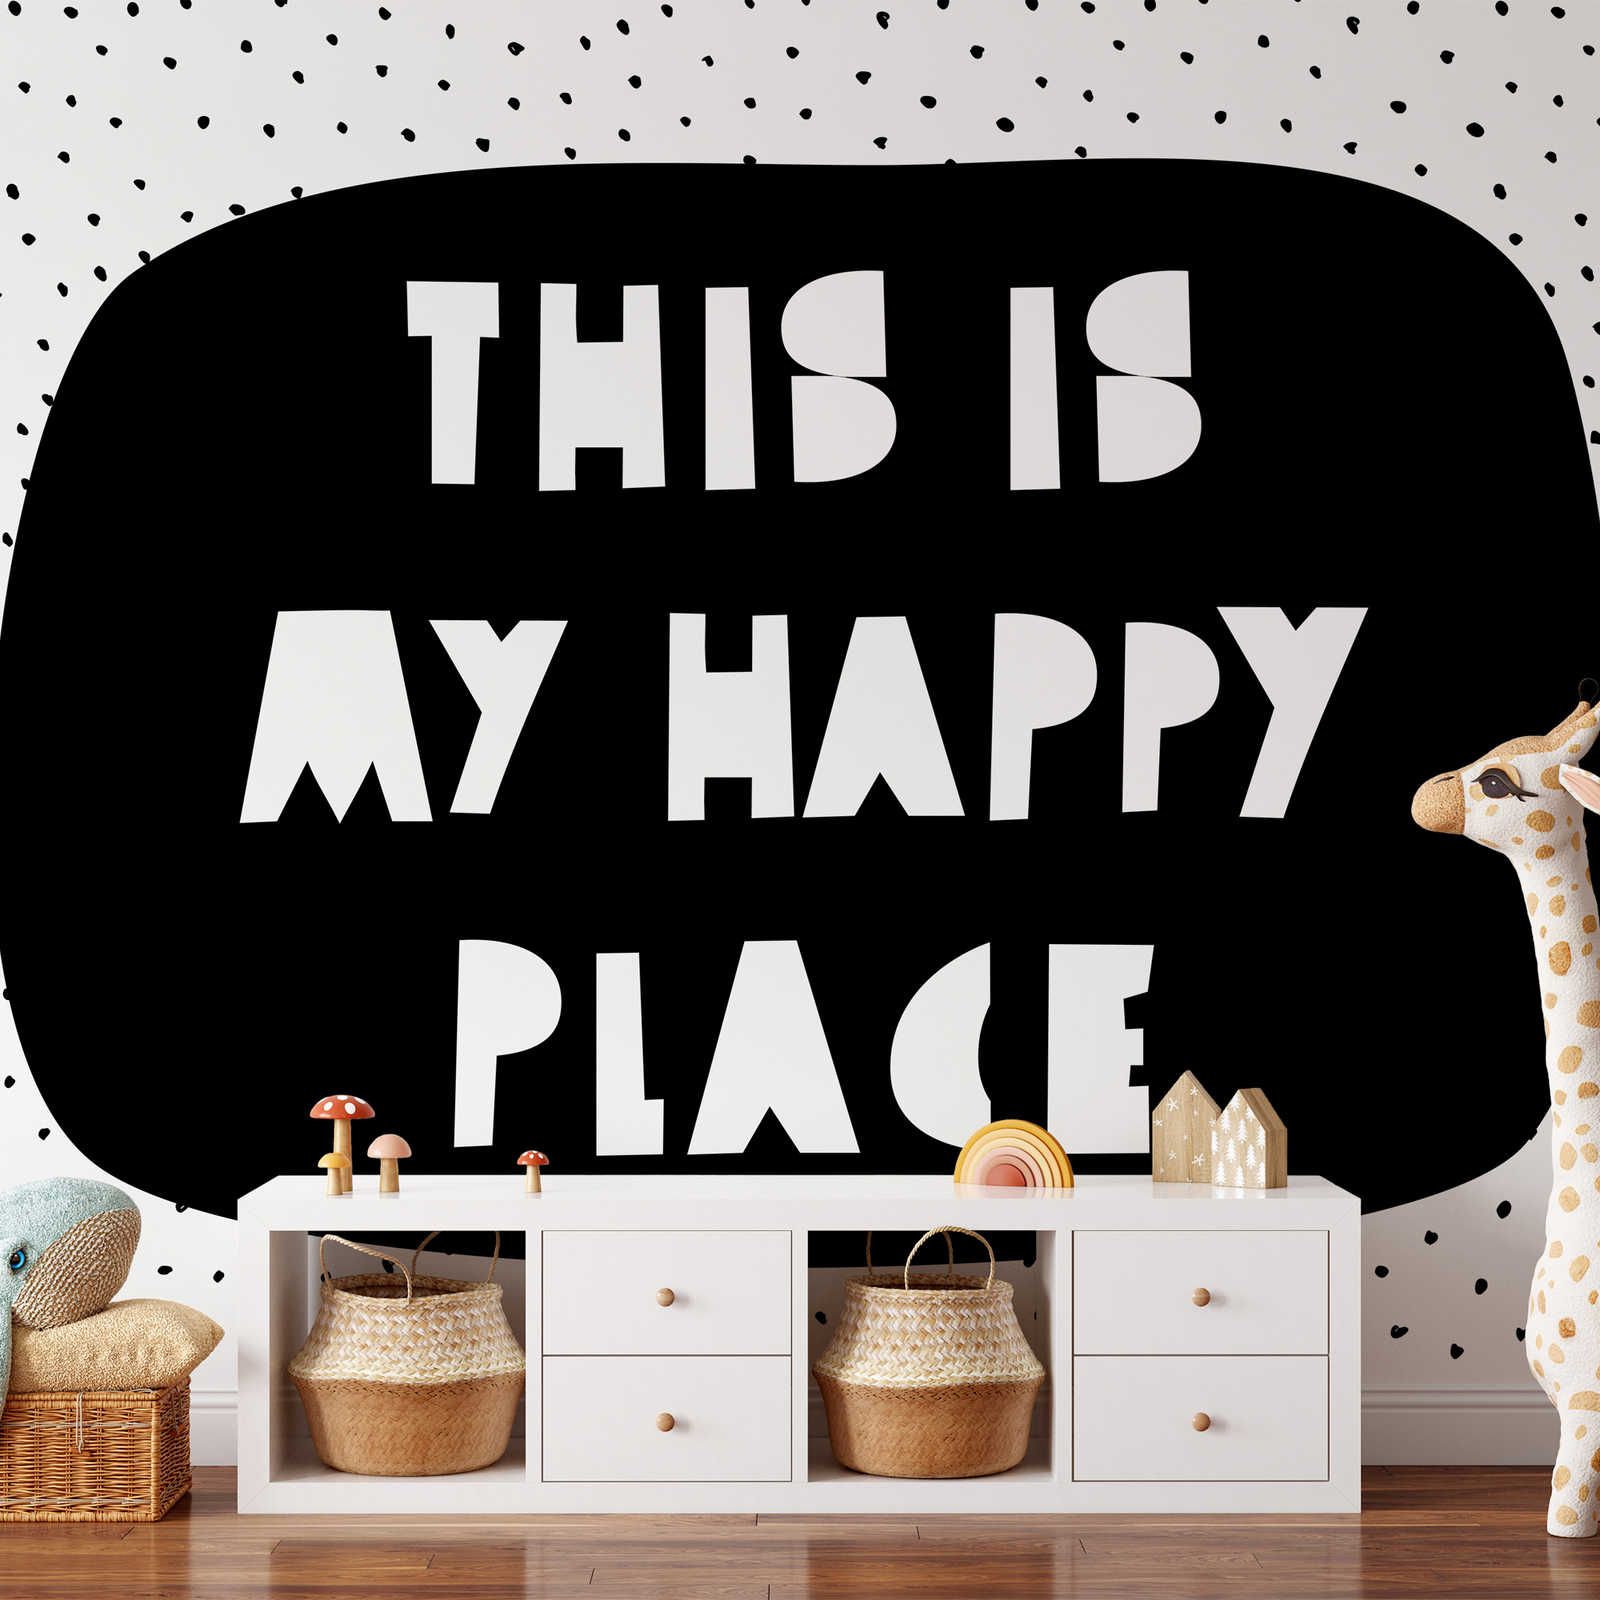 Digital behang voor kinderkamer met opschrift "This is my happy place" - Strukturenvlies
